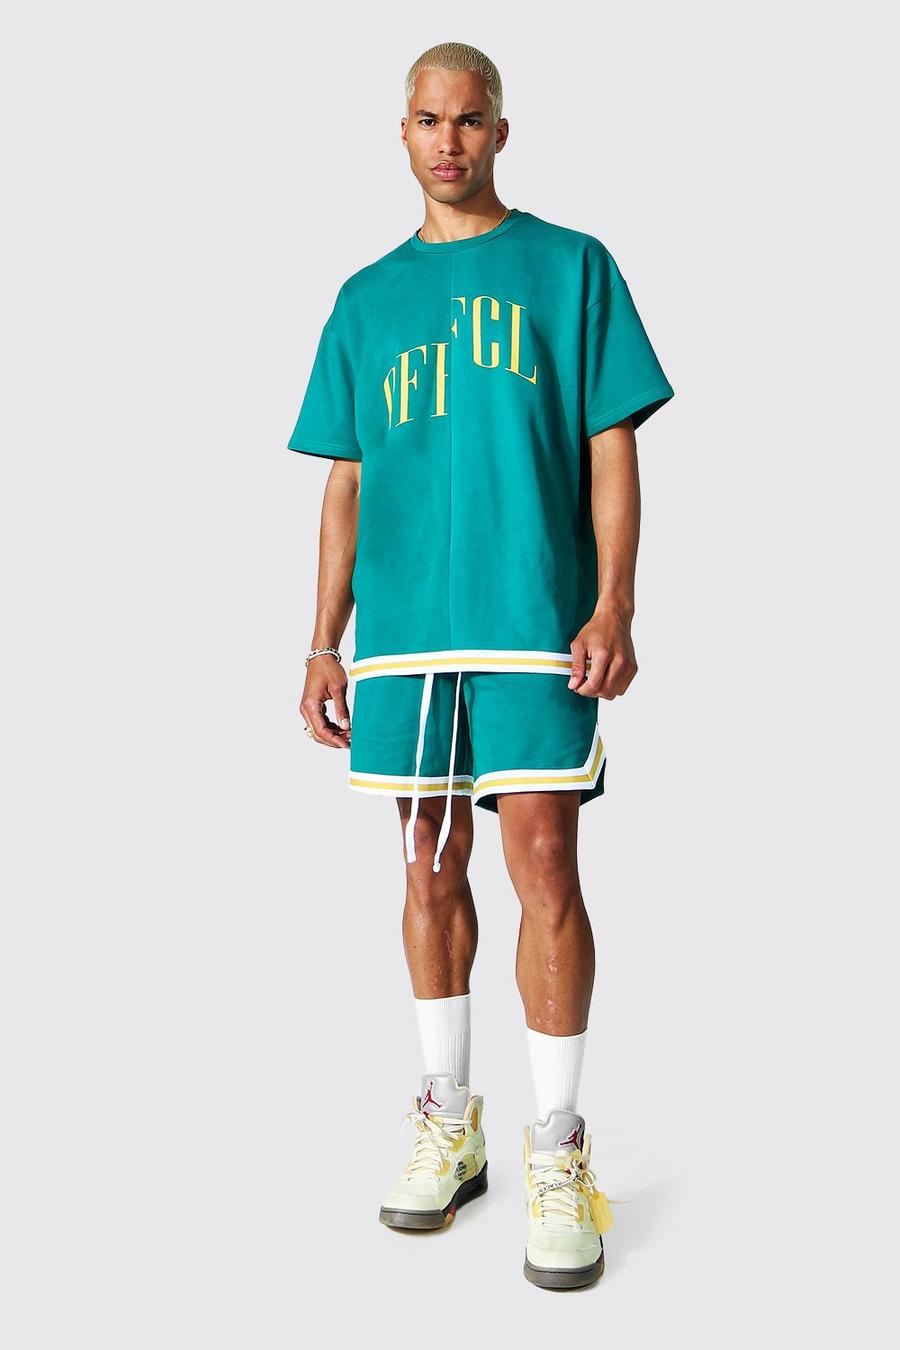 Teal Oversized Offcl T-Shirt Met Streep En Basketbal Shorts image number 1